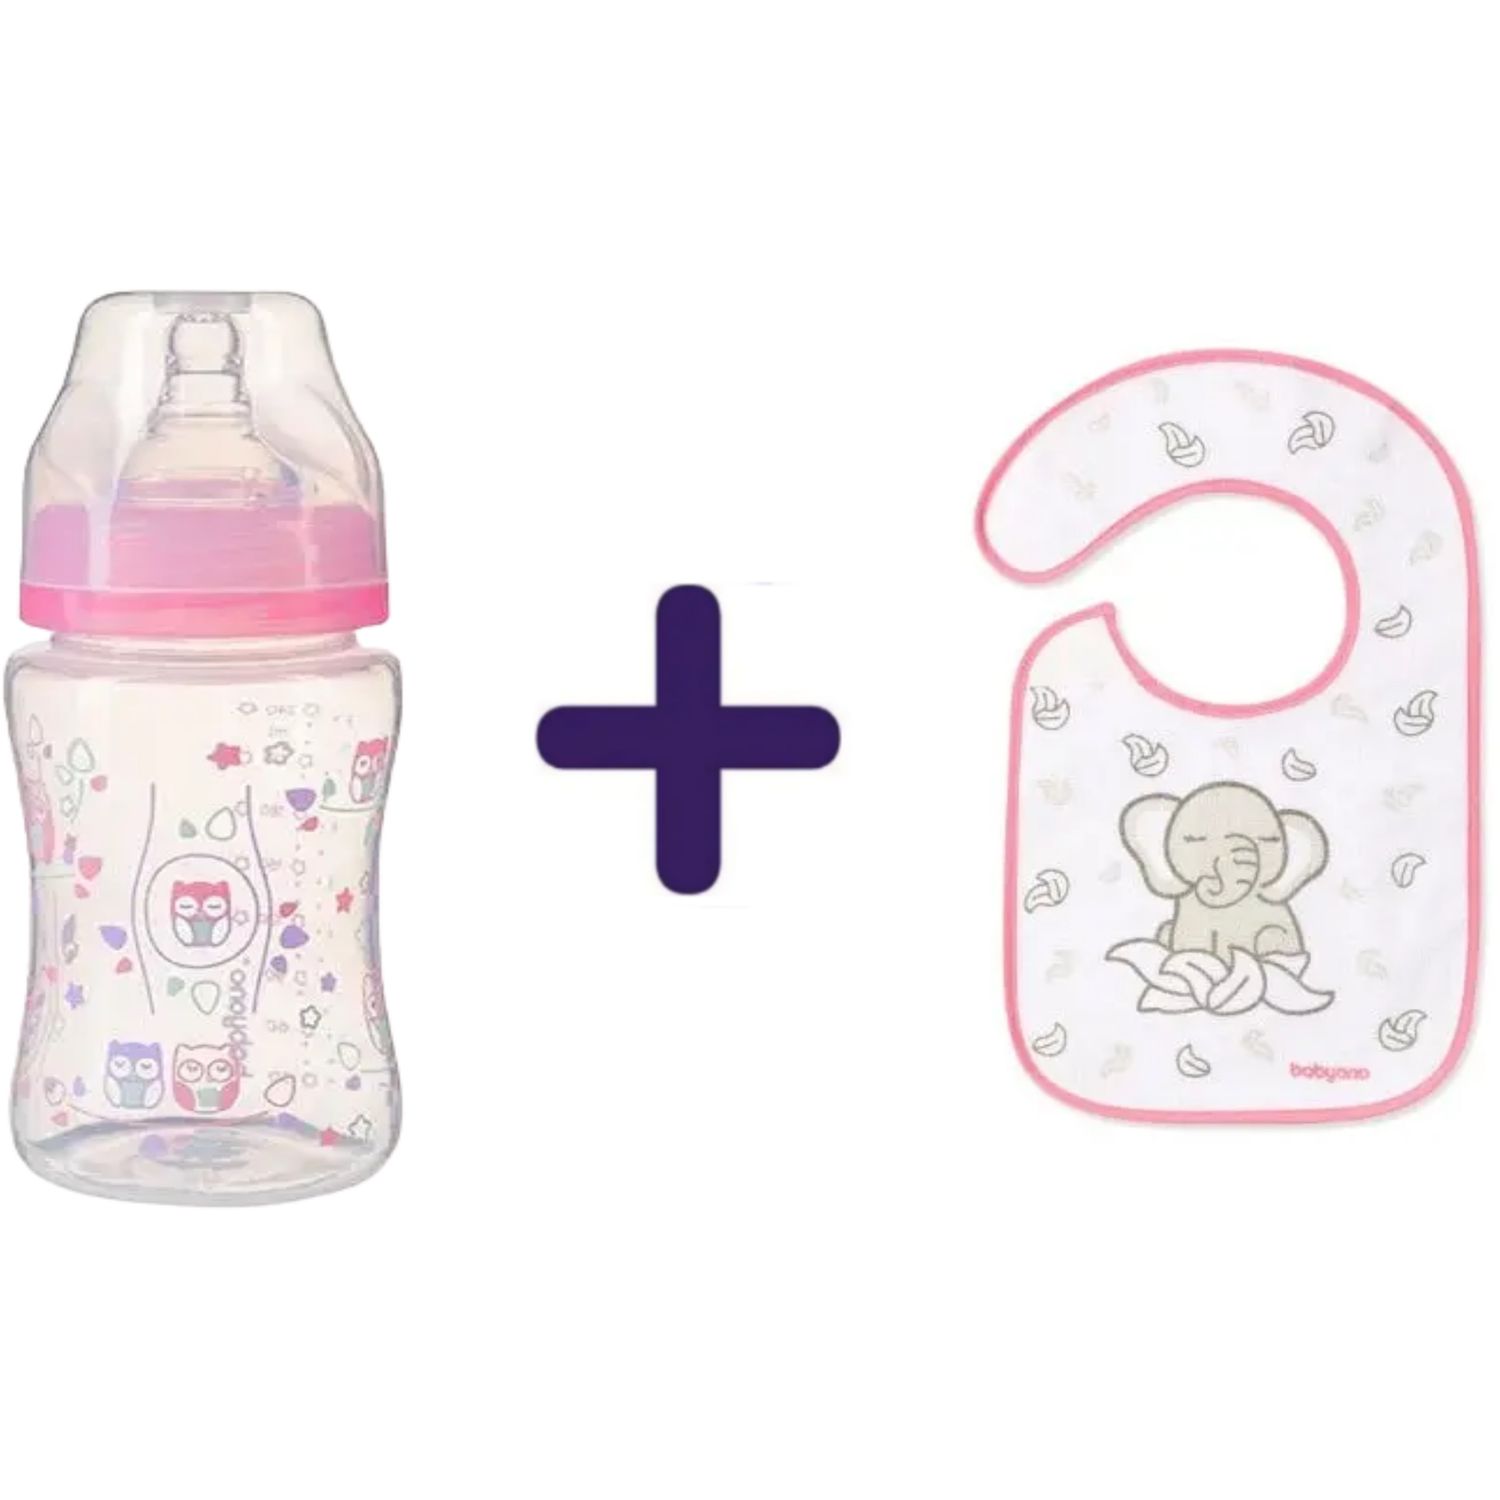 Набір: Пляшка для годування BabyOno, 240 мл, рожевий (403) + Слинявчик-нагрудник махровий BabyOno Flavour Explorer Слон, рожевий (832) - фото 1